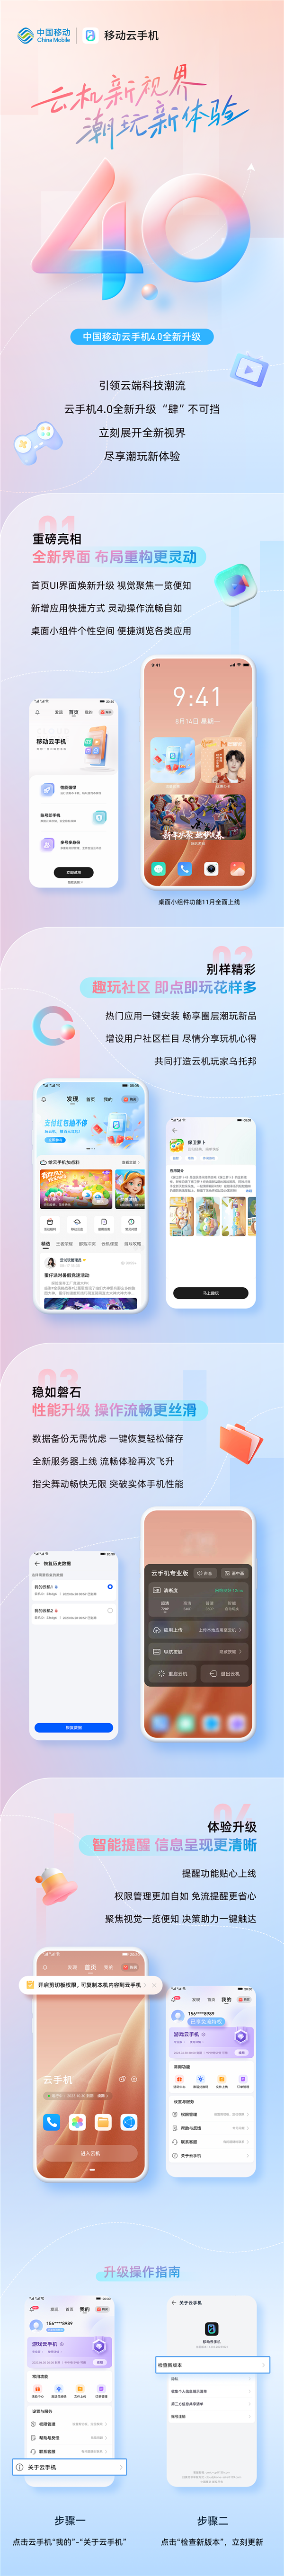 中国移动云手机4.0版本上线：UI焕新 突破实体手机性能  第1张